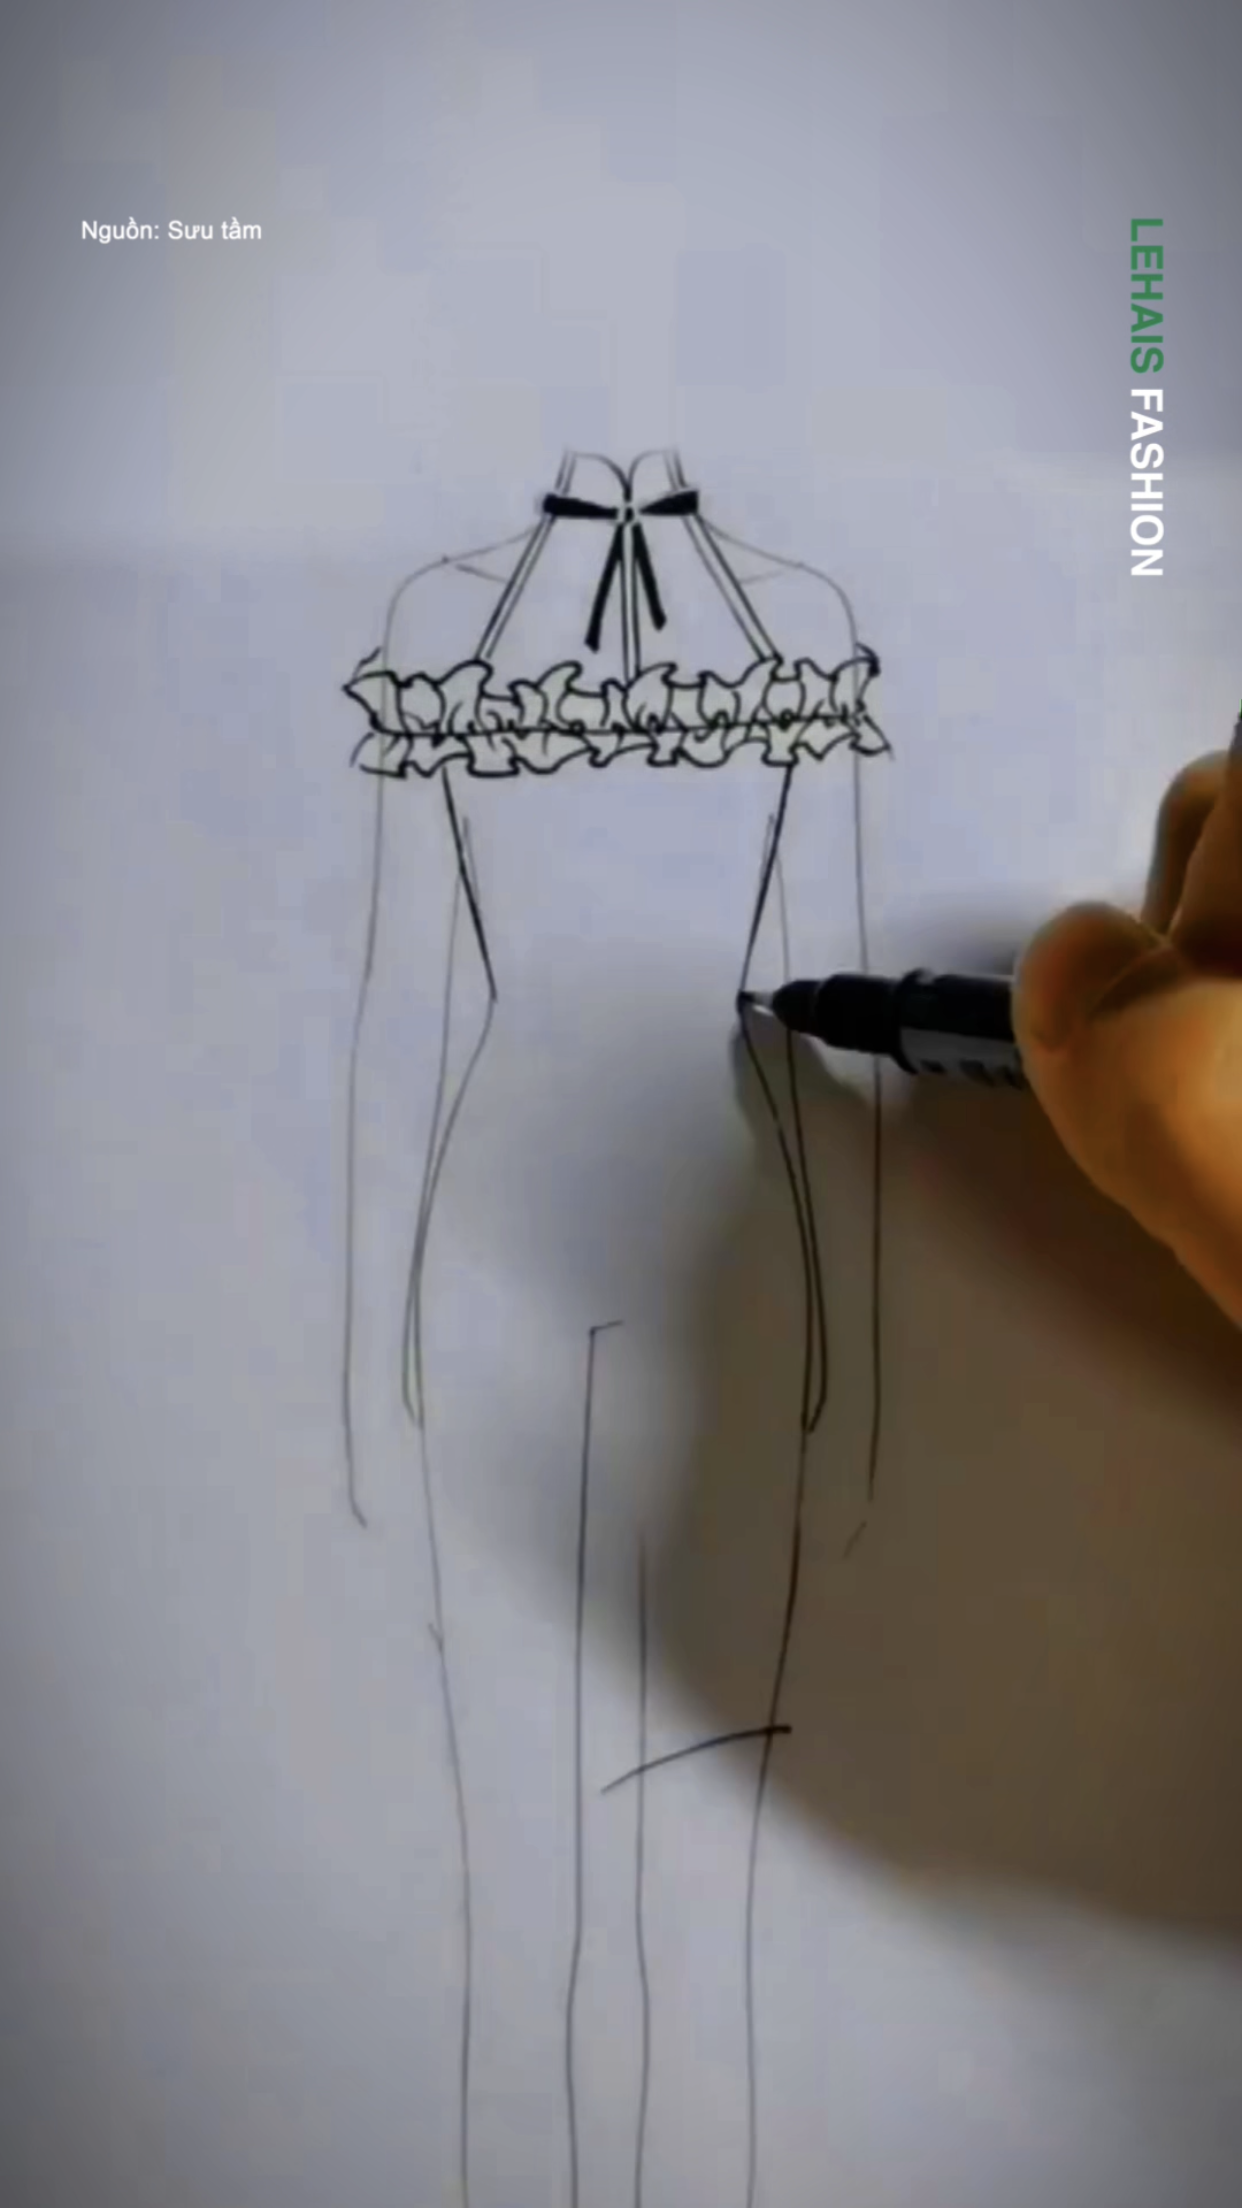 Vẽ thiết kế váy cực đơn giản